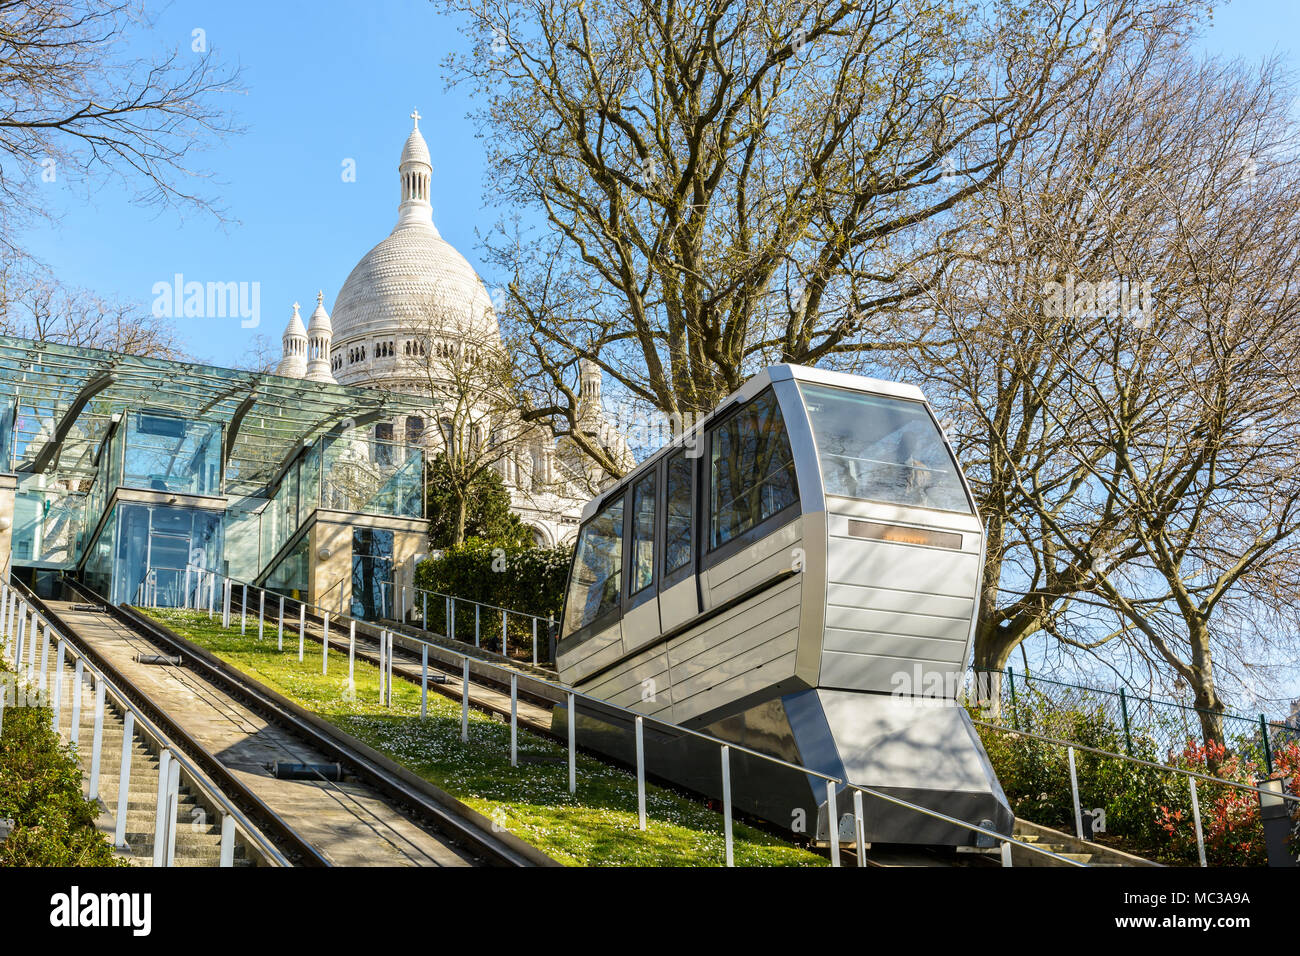 Le funiculaire de Montmartre permet d'aller jusqu'à la colline de la basilique du Sacré-Cœur en quelques secondes sans en montant les 222 marches de l'escalier. Banque D'Images